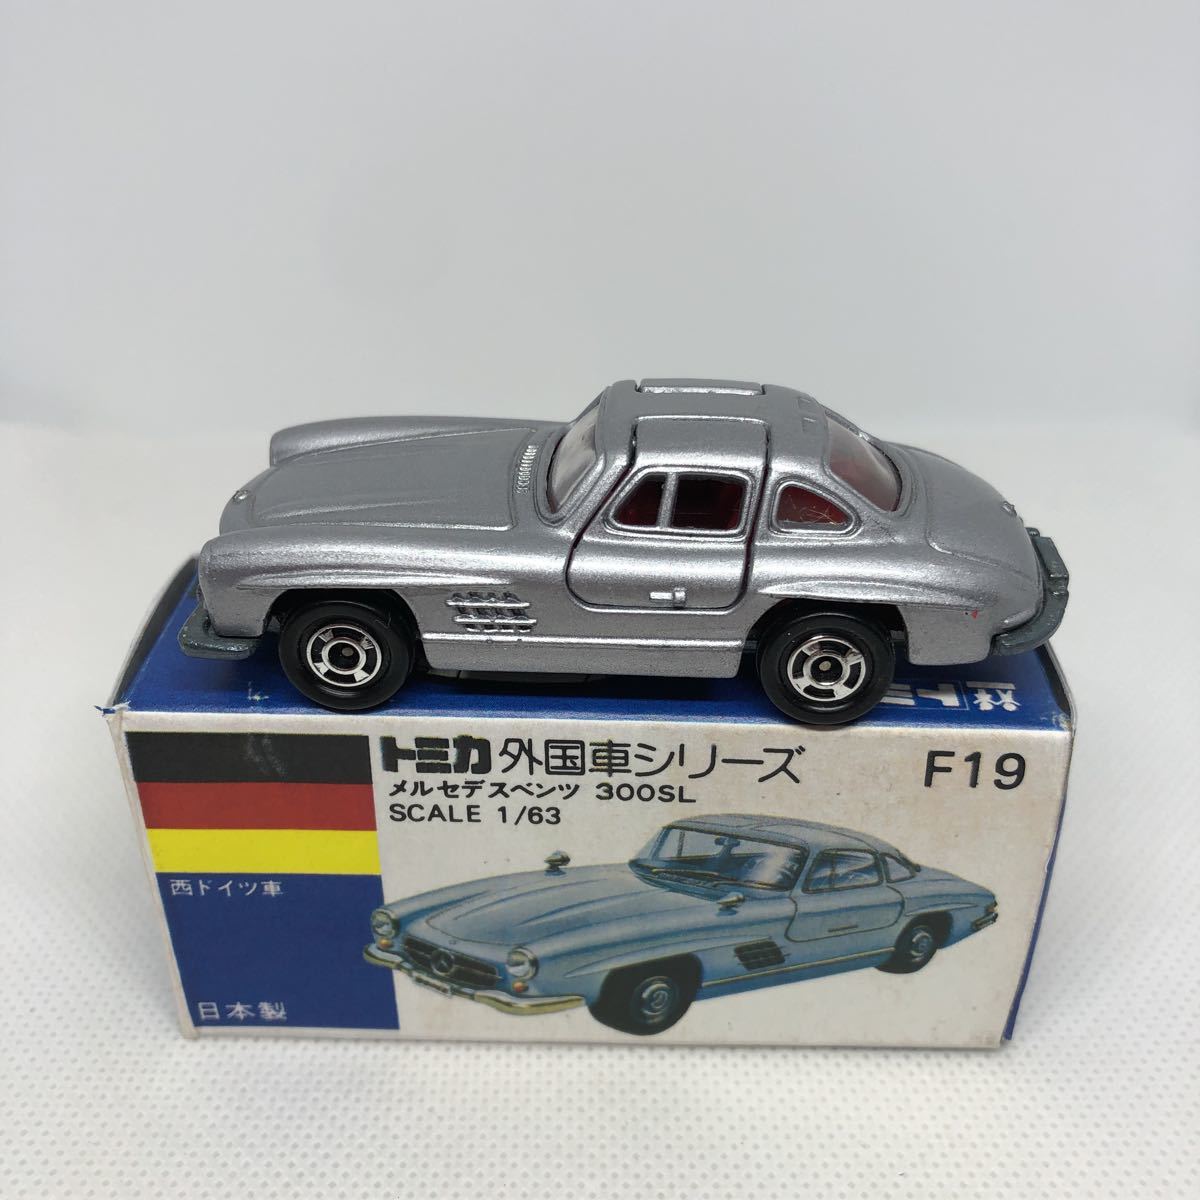 注目ショップ・ブランドのギフト 青箱日本製トミカF19 メルセデス 